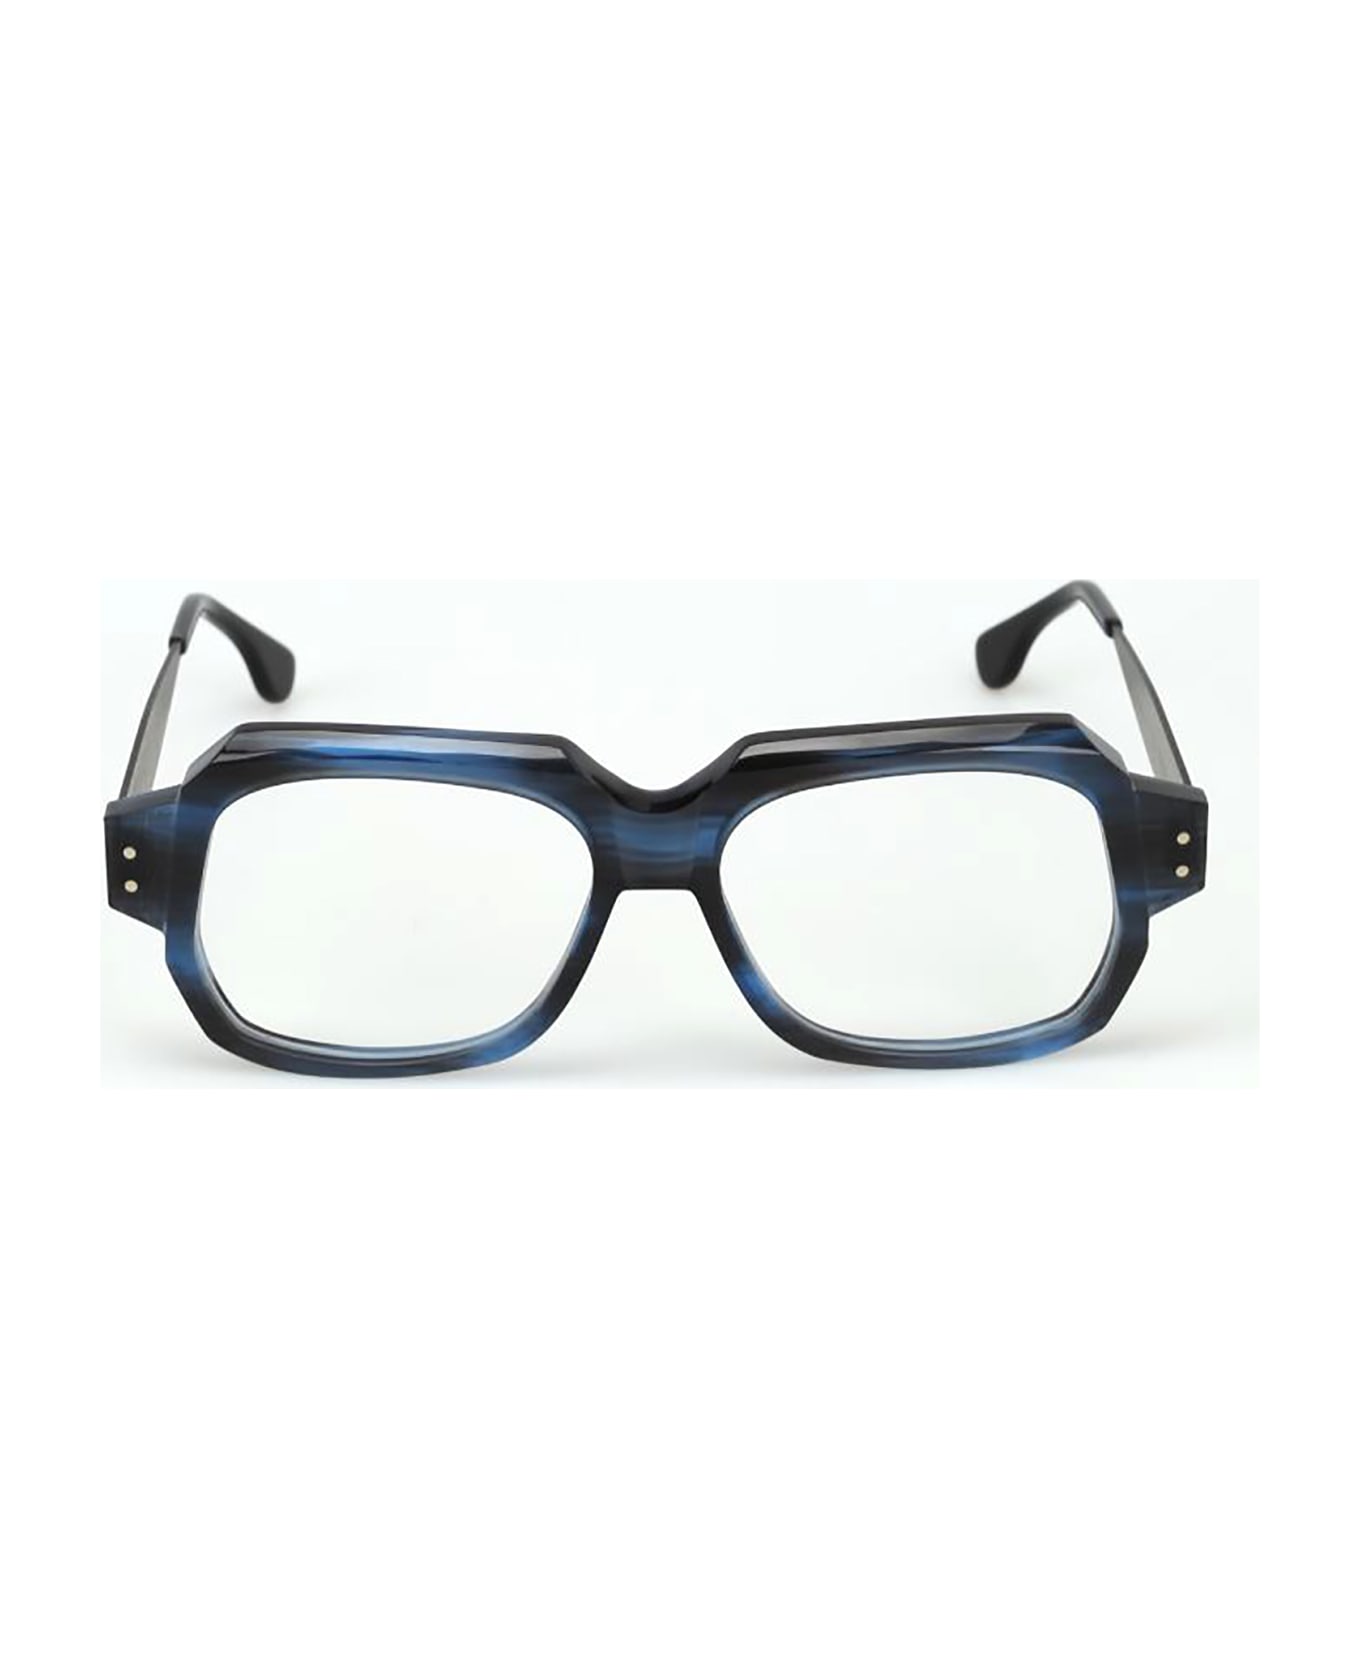 Rapp Eyewear REED Eyewear - Cyber Blue